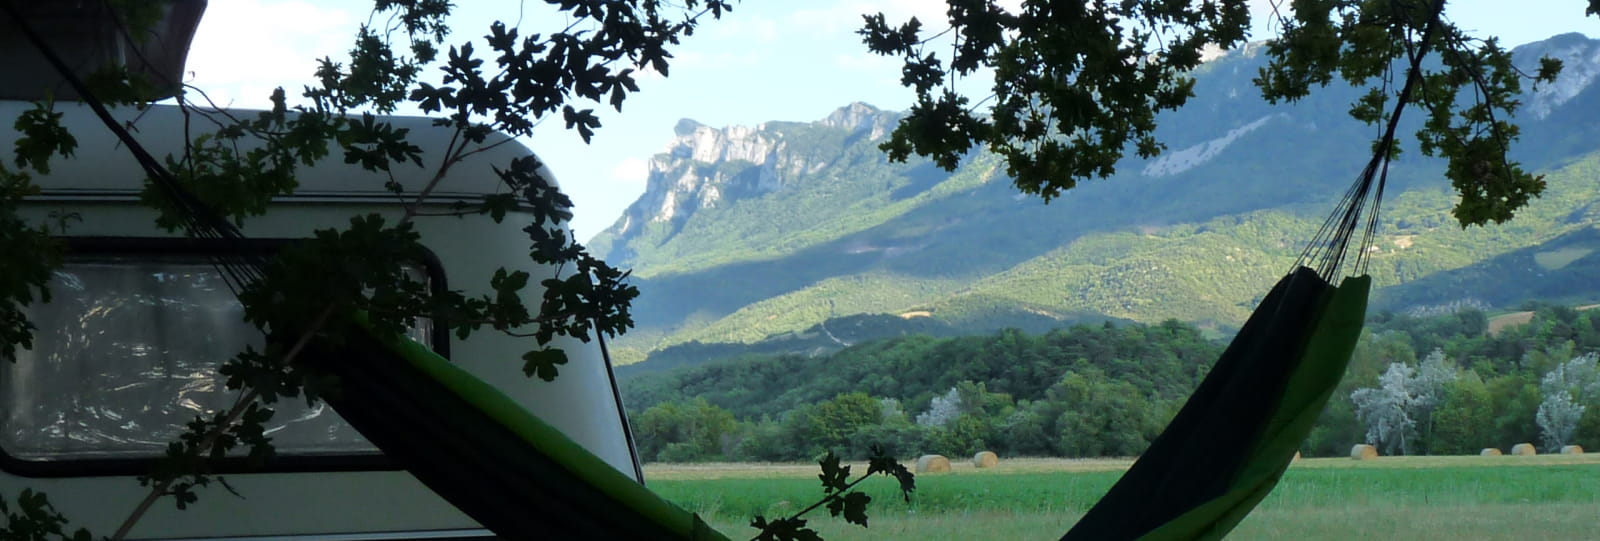 Aire Naturelle de Camping le Petit Nid